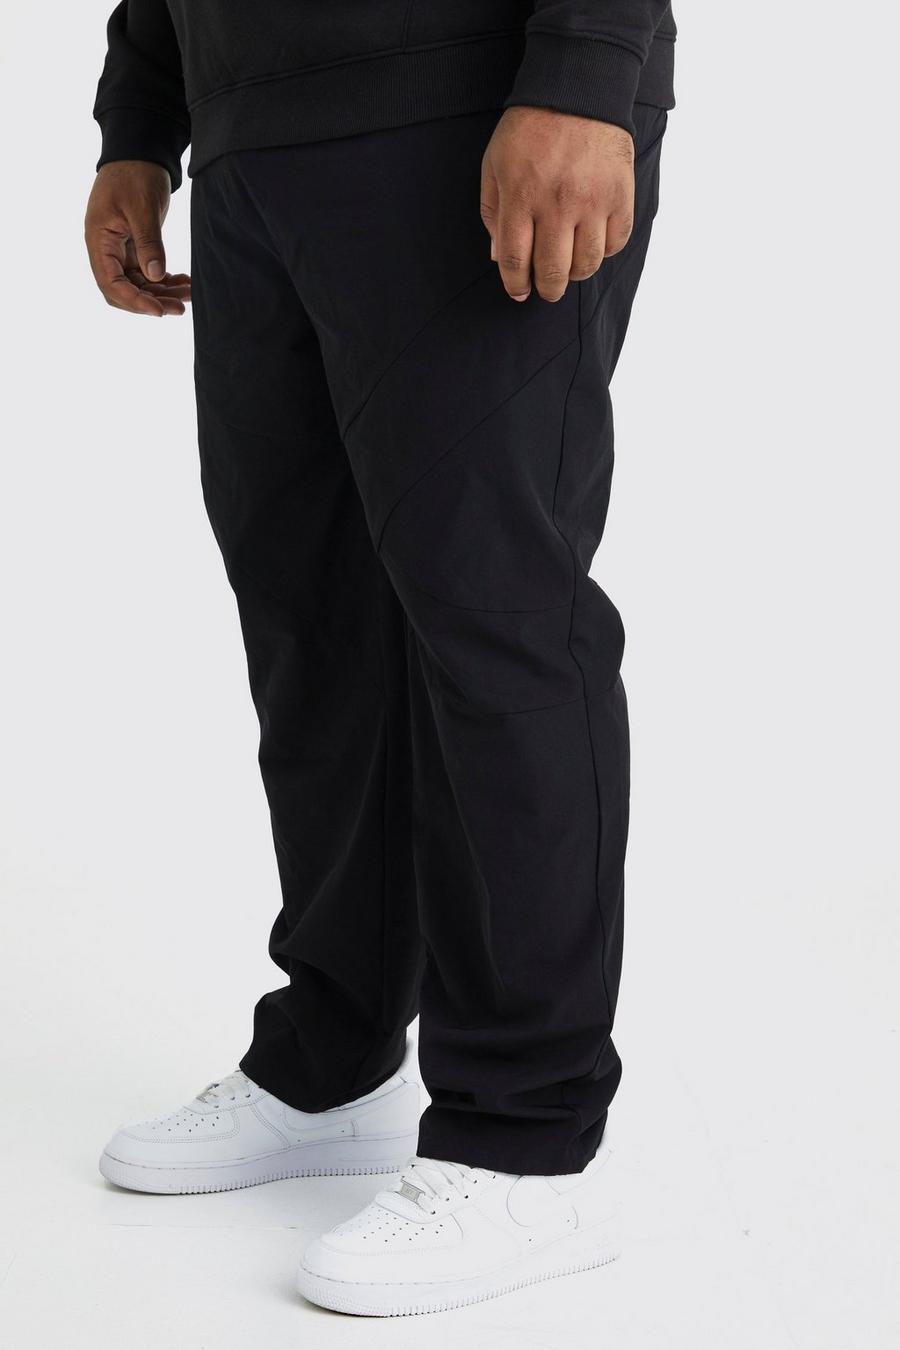 Pantalón Plus elástico recto con panel técnico, Black nero